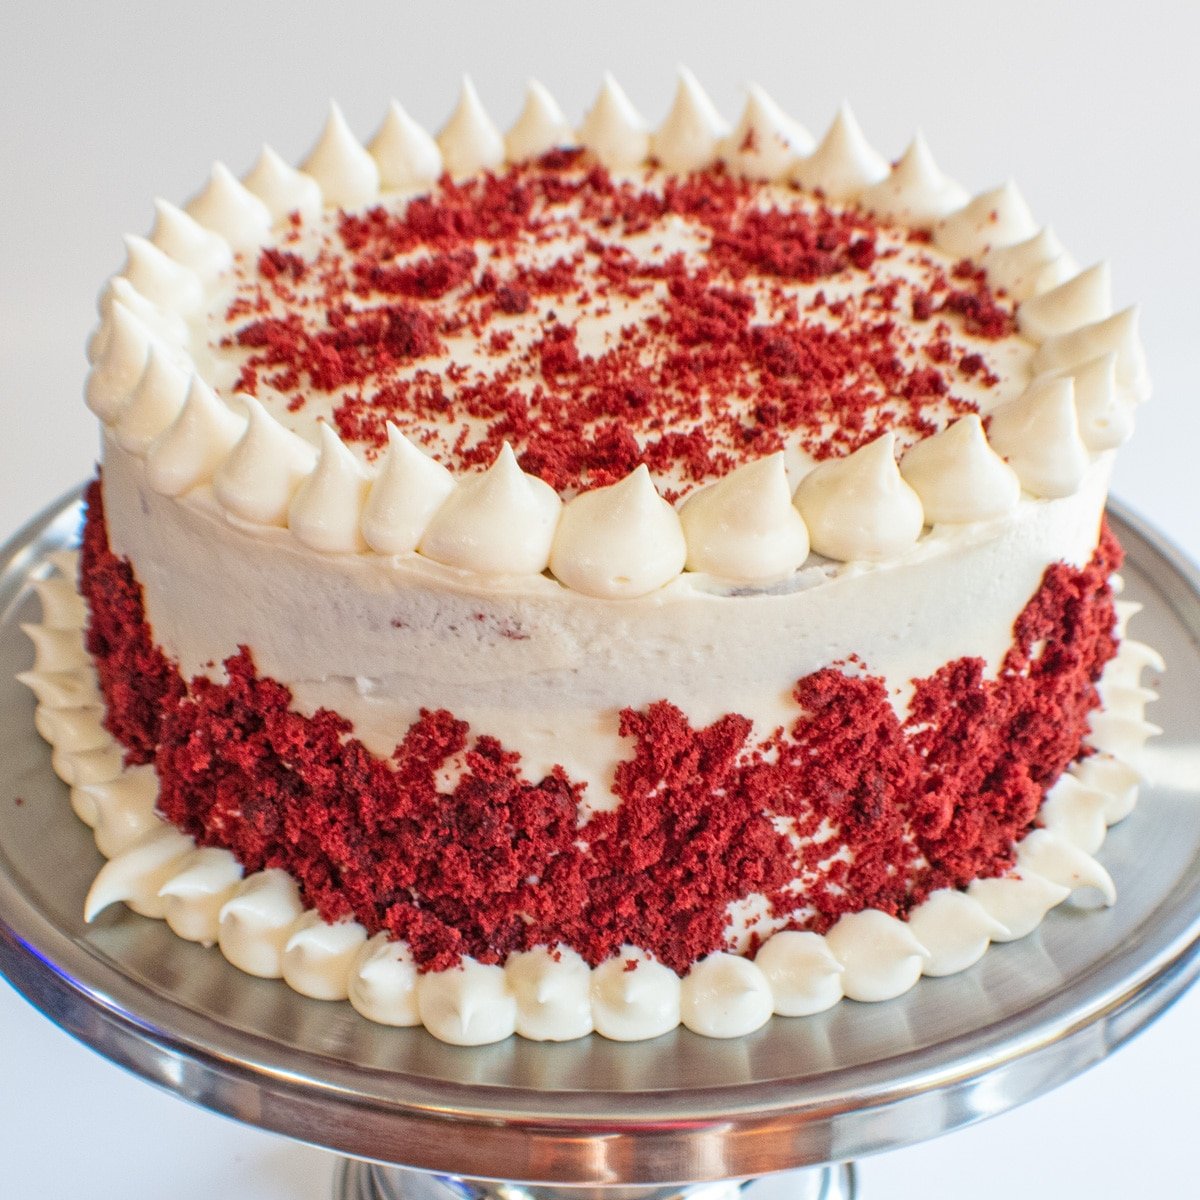 Vierkant beeld van red velvet cake met roomkaas frosting.